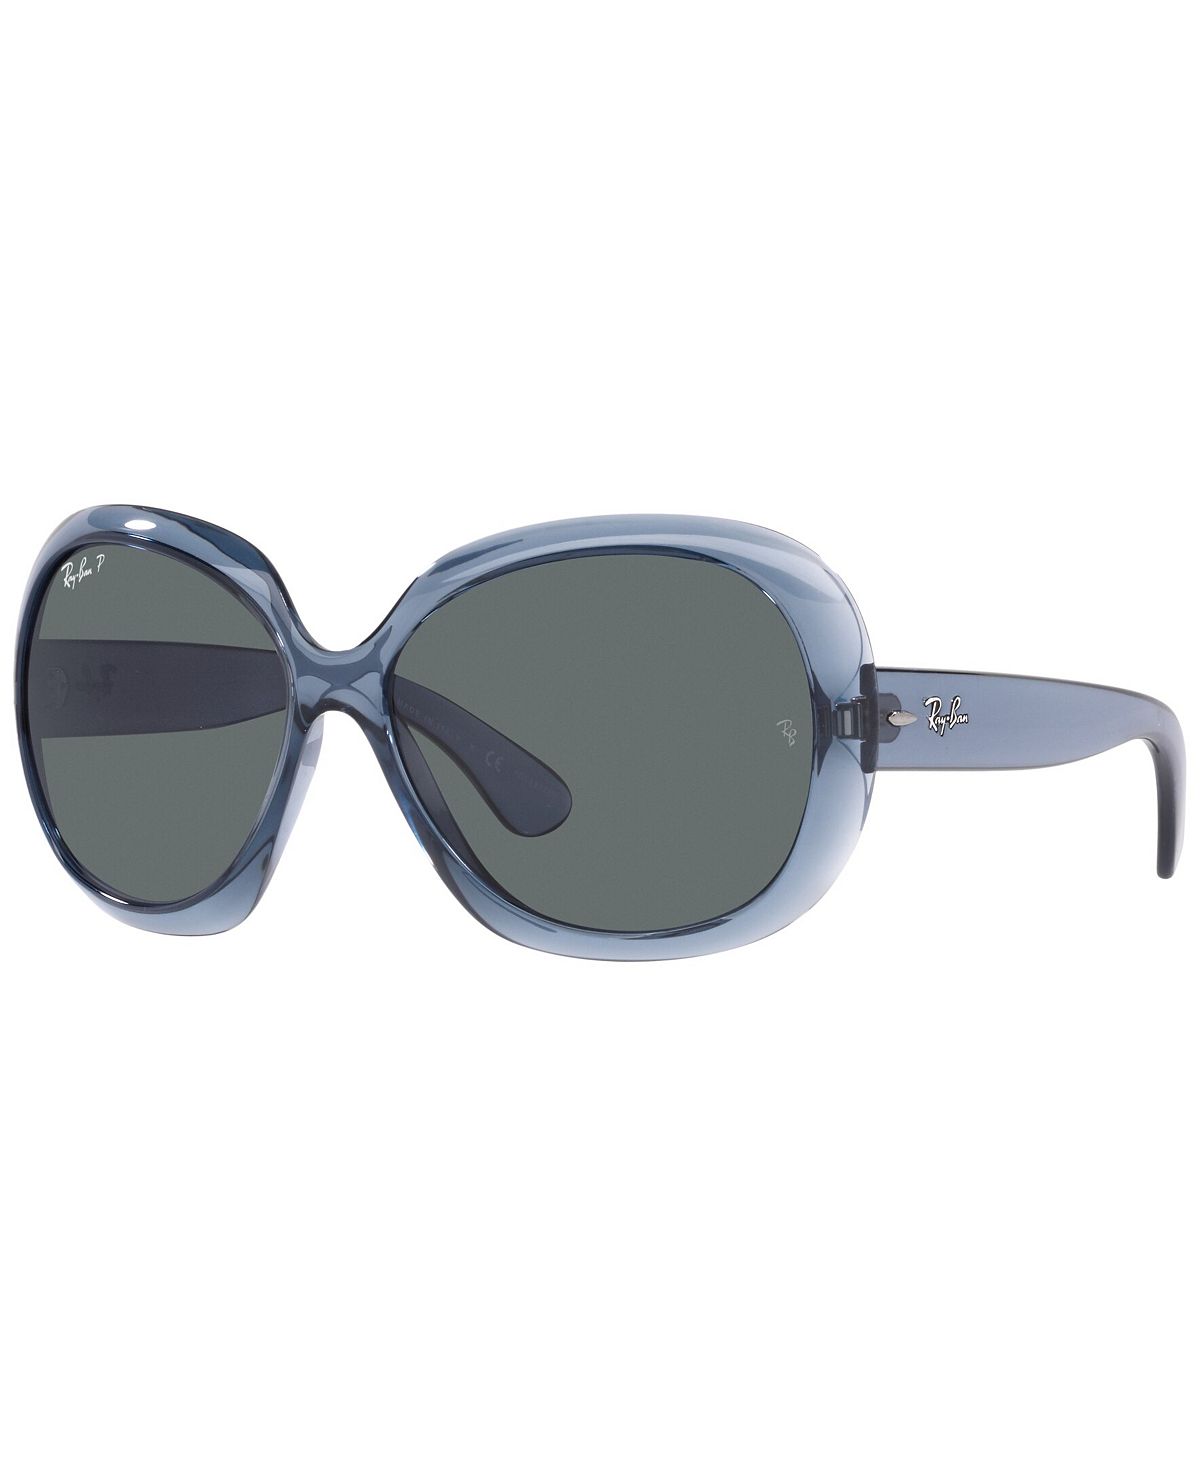 цена Женские поляризованные солнцезащитные очки, RB4098 JACKIE OHH II 60 Ray-Ban